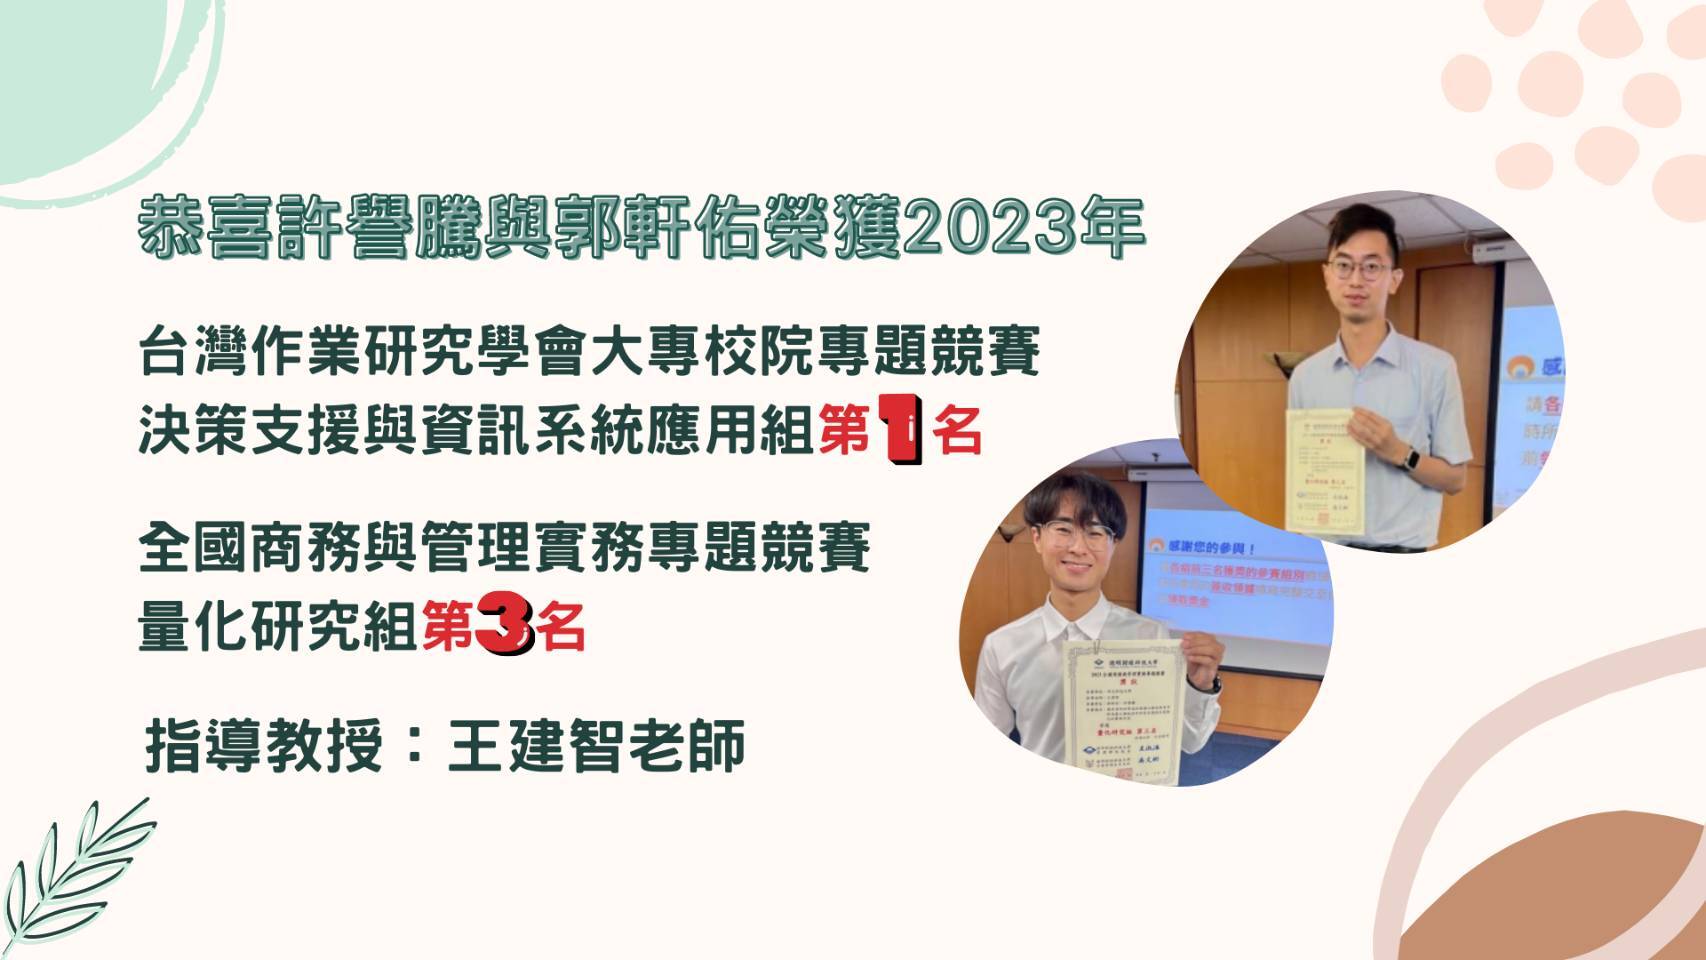 2023 台灣作業研究學會大專校院專題競賽第一名 與 全國商務與管理實務專題競賽第三名